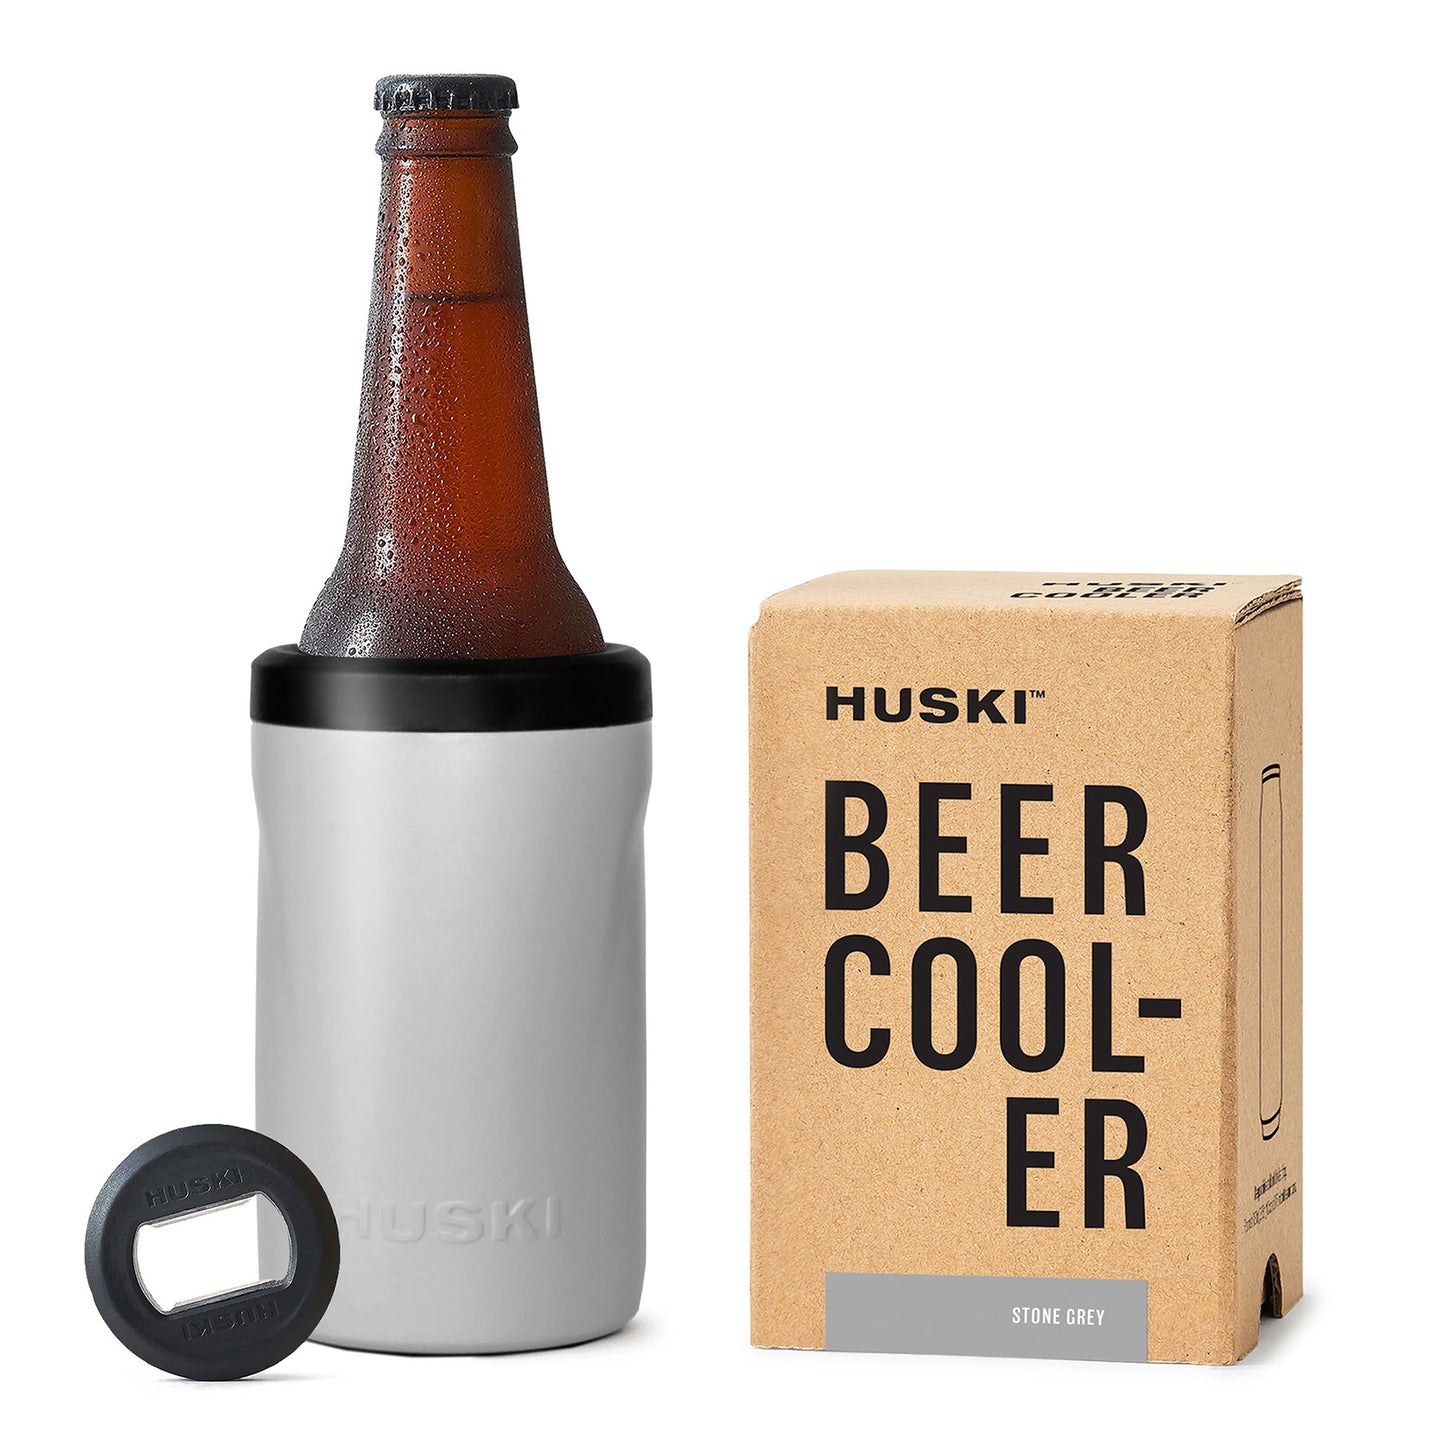 Huski beer cooler stone grey